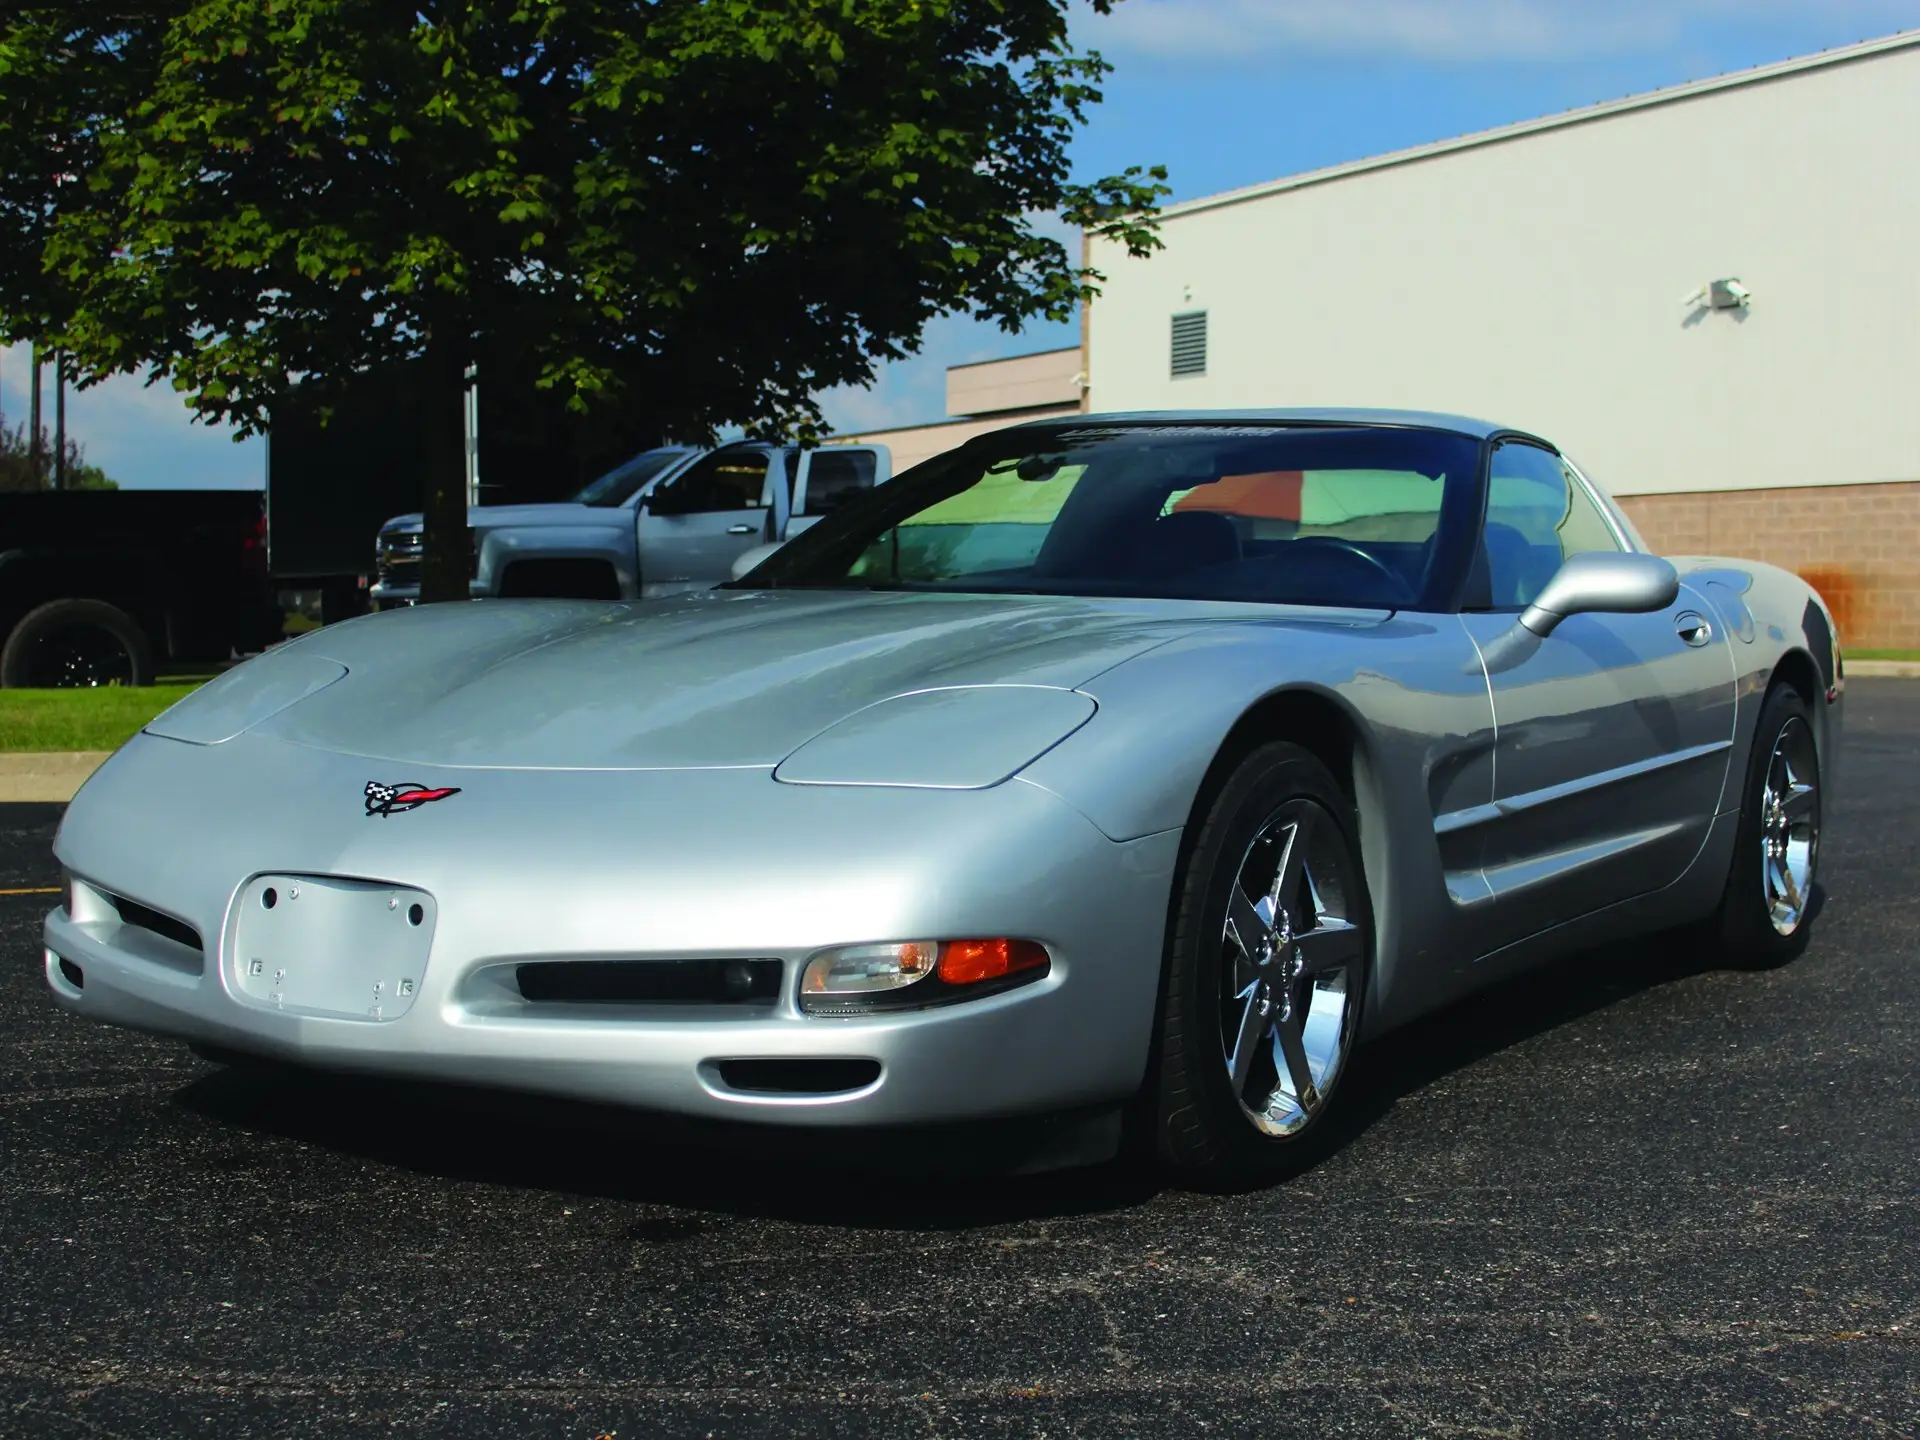 Corvette Of The Day: 1998 Chevrolet Corvette